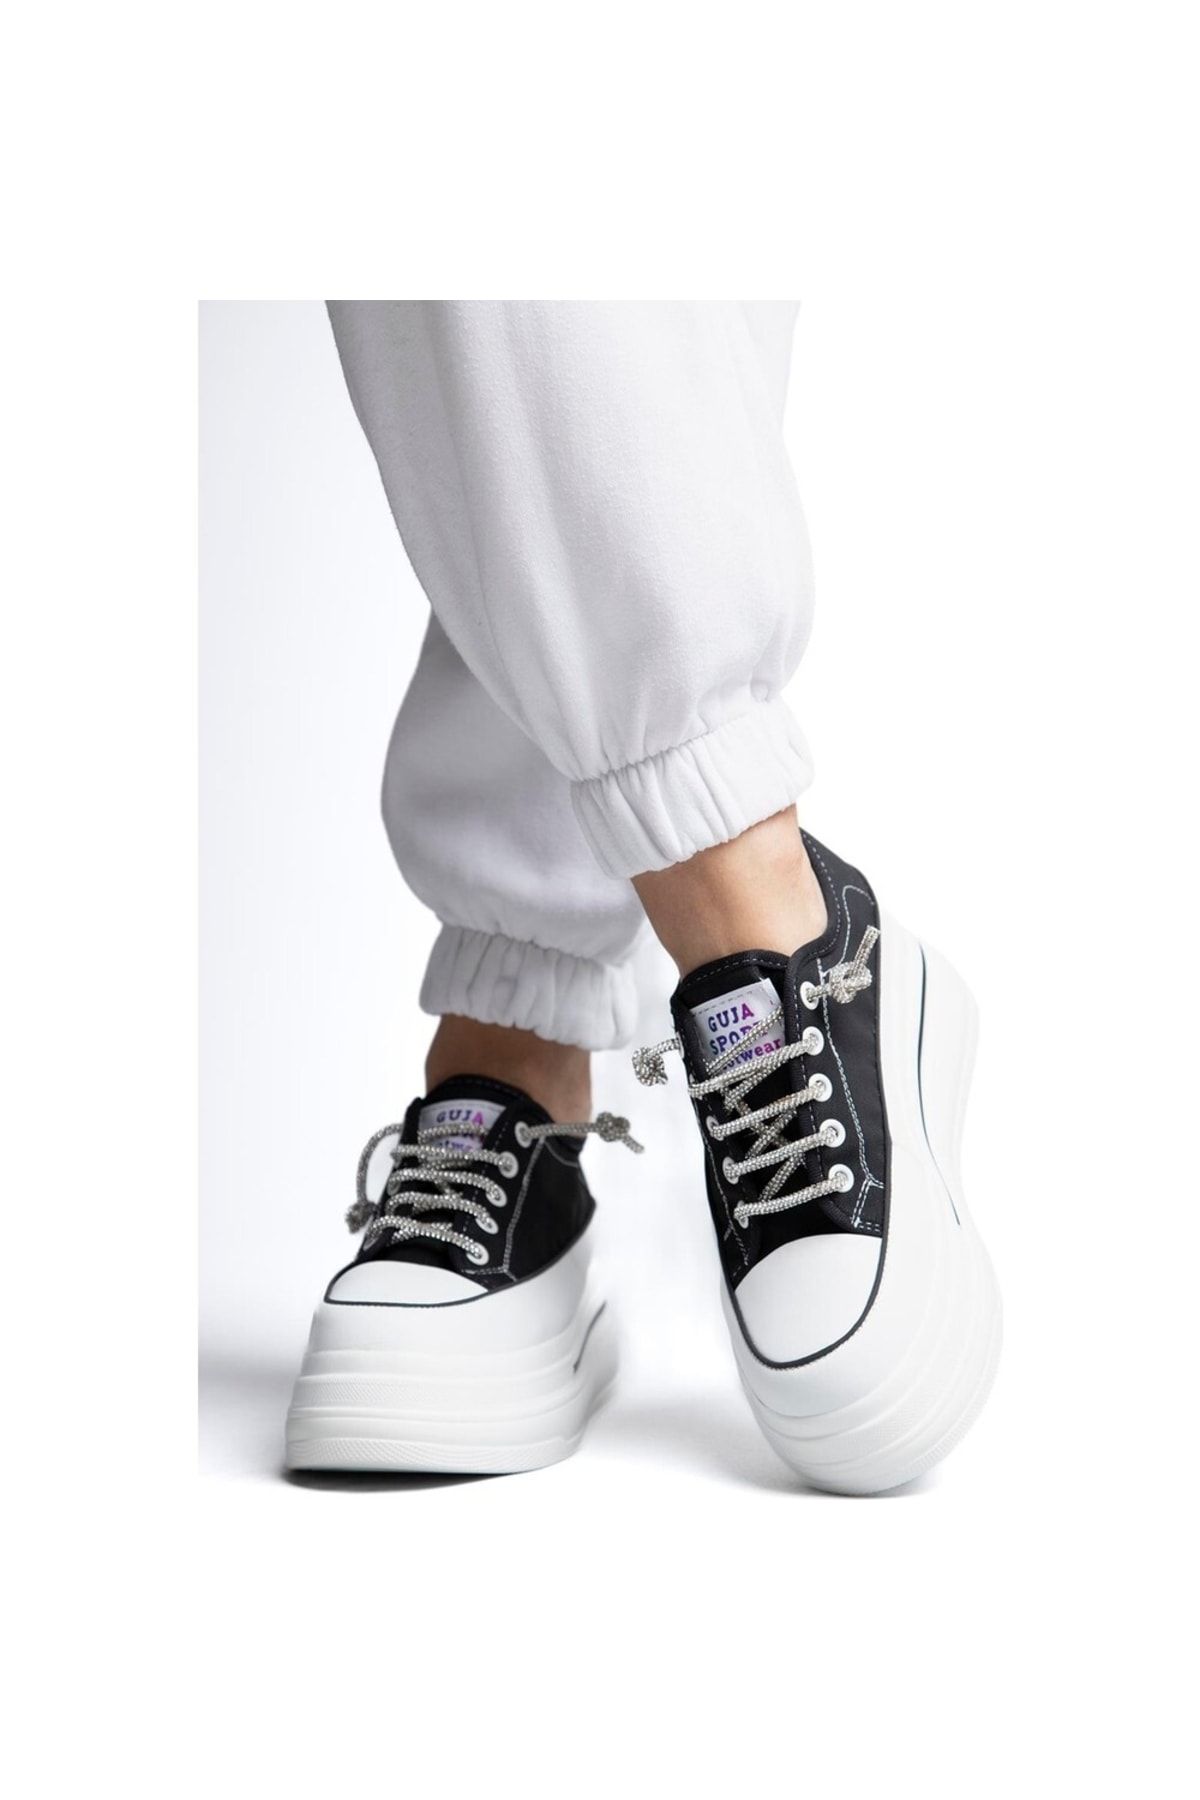 Guja 23Y345 Siyah Deri Kalın Platform Beyaz Taşlı Bağcıklı Fileli Ortopedik Sneaker Spor Ayakkabı